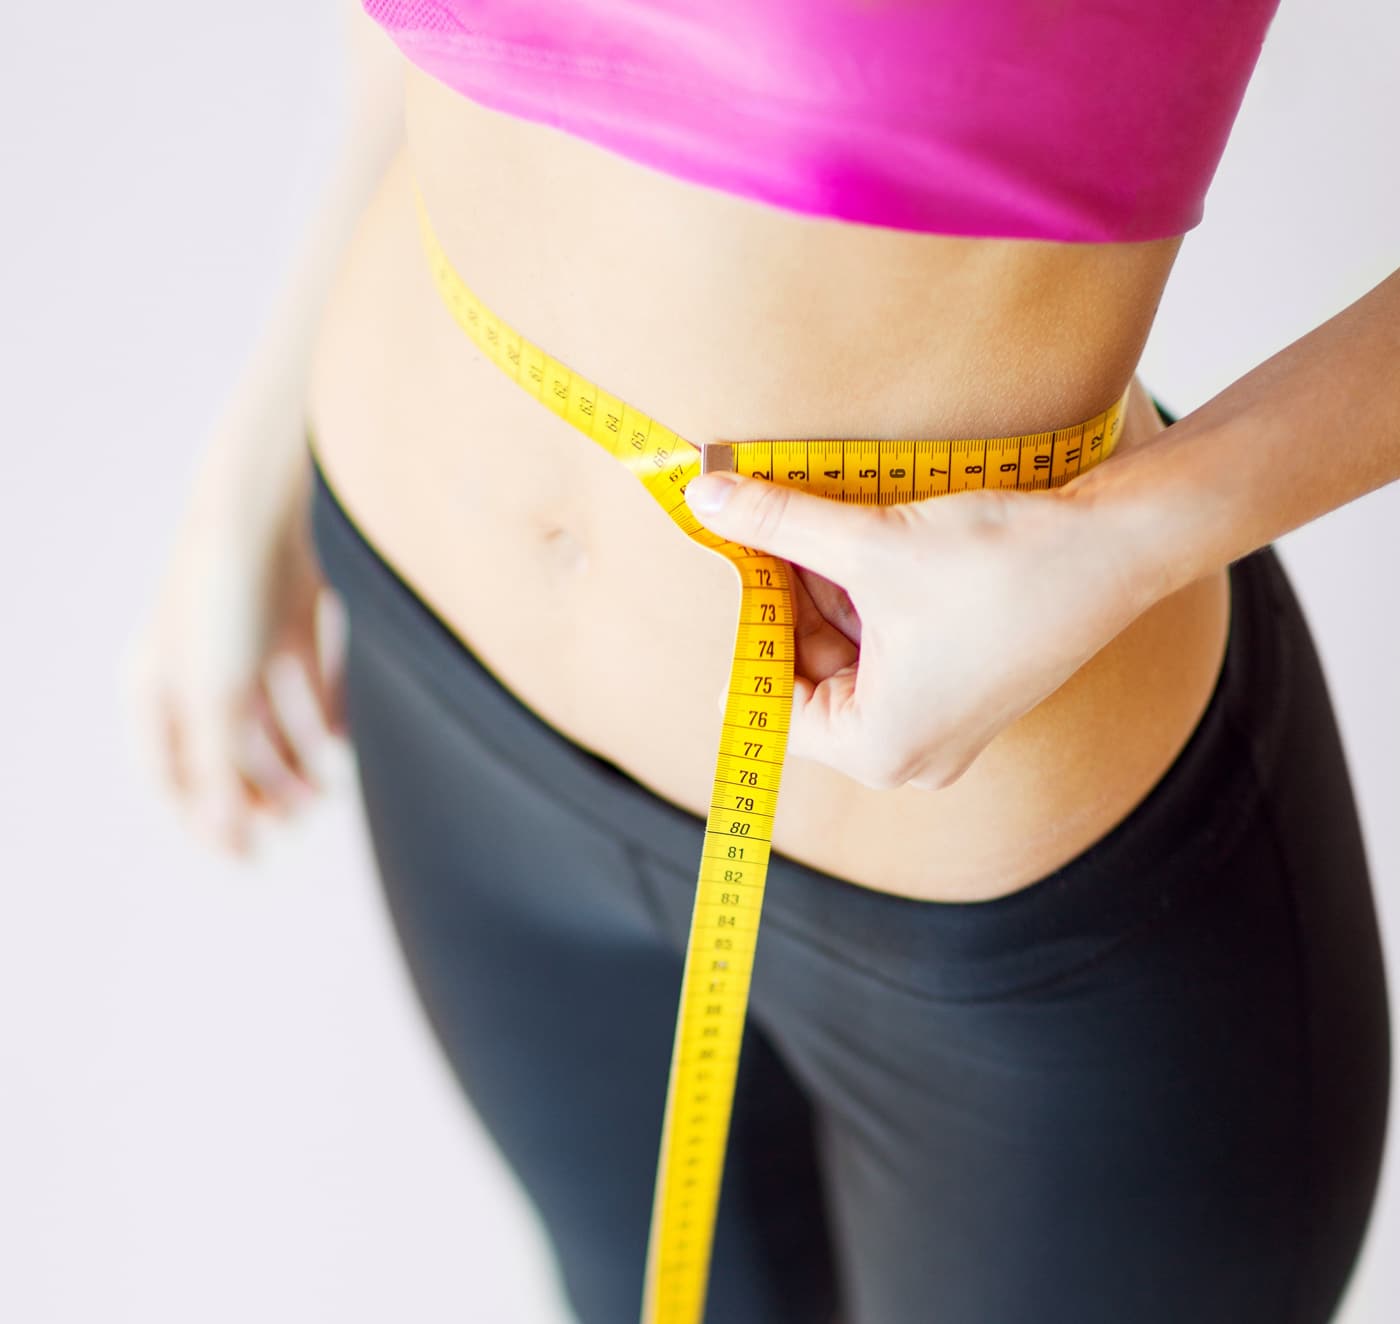 Besoin d'aide pour perdre du poids? Comment maigrir?